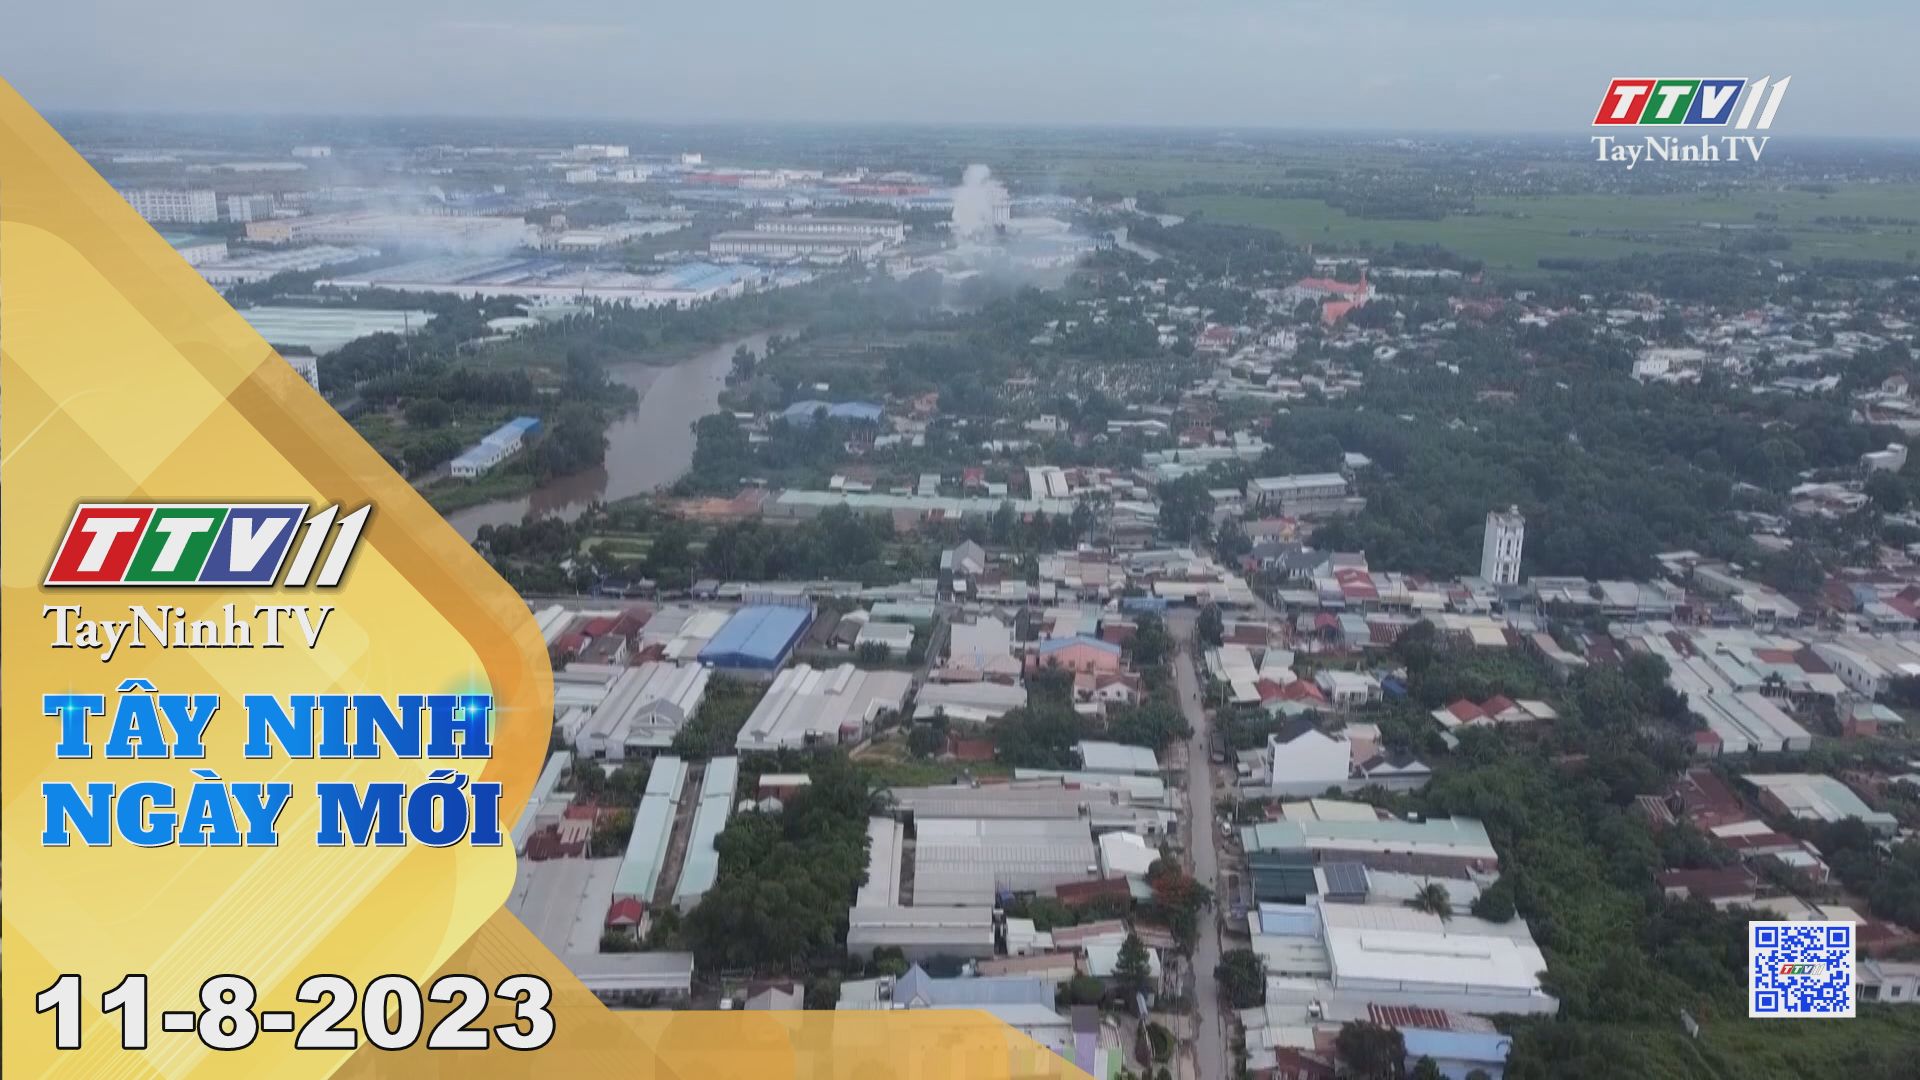 Tây Ninh ngày mới 11-8-2023 | Tin tức hôm nay | TayNinhTV